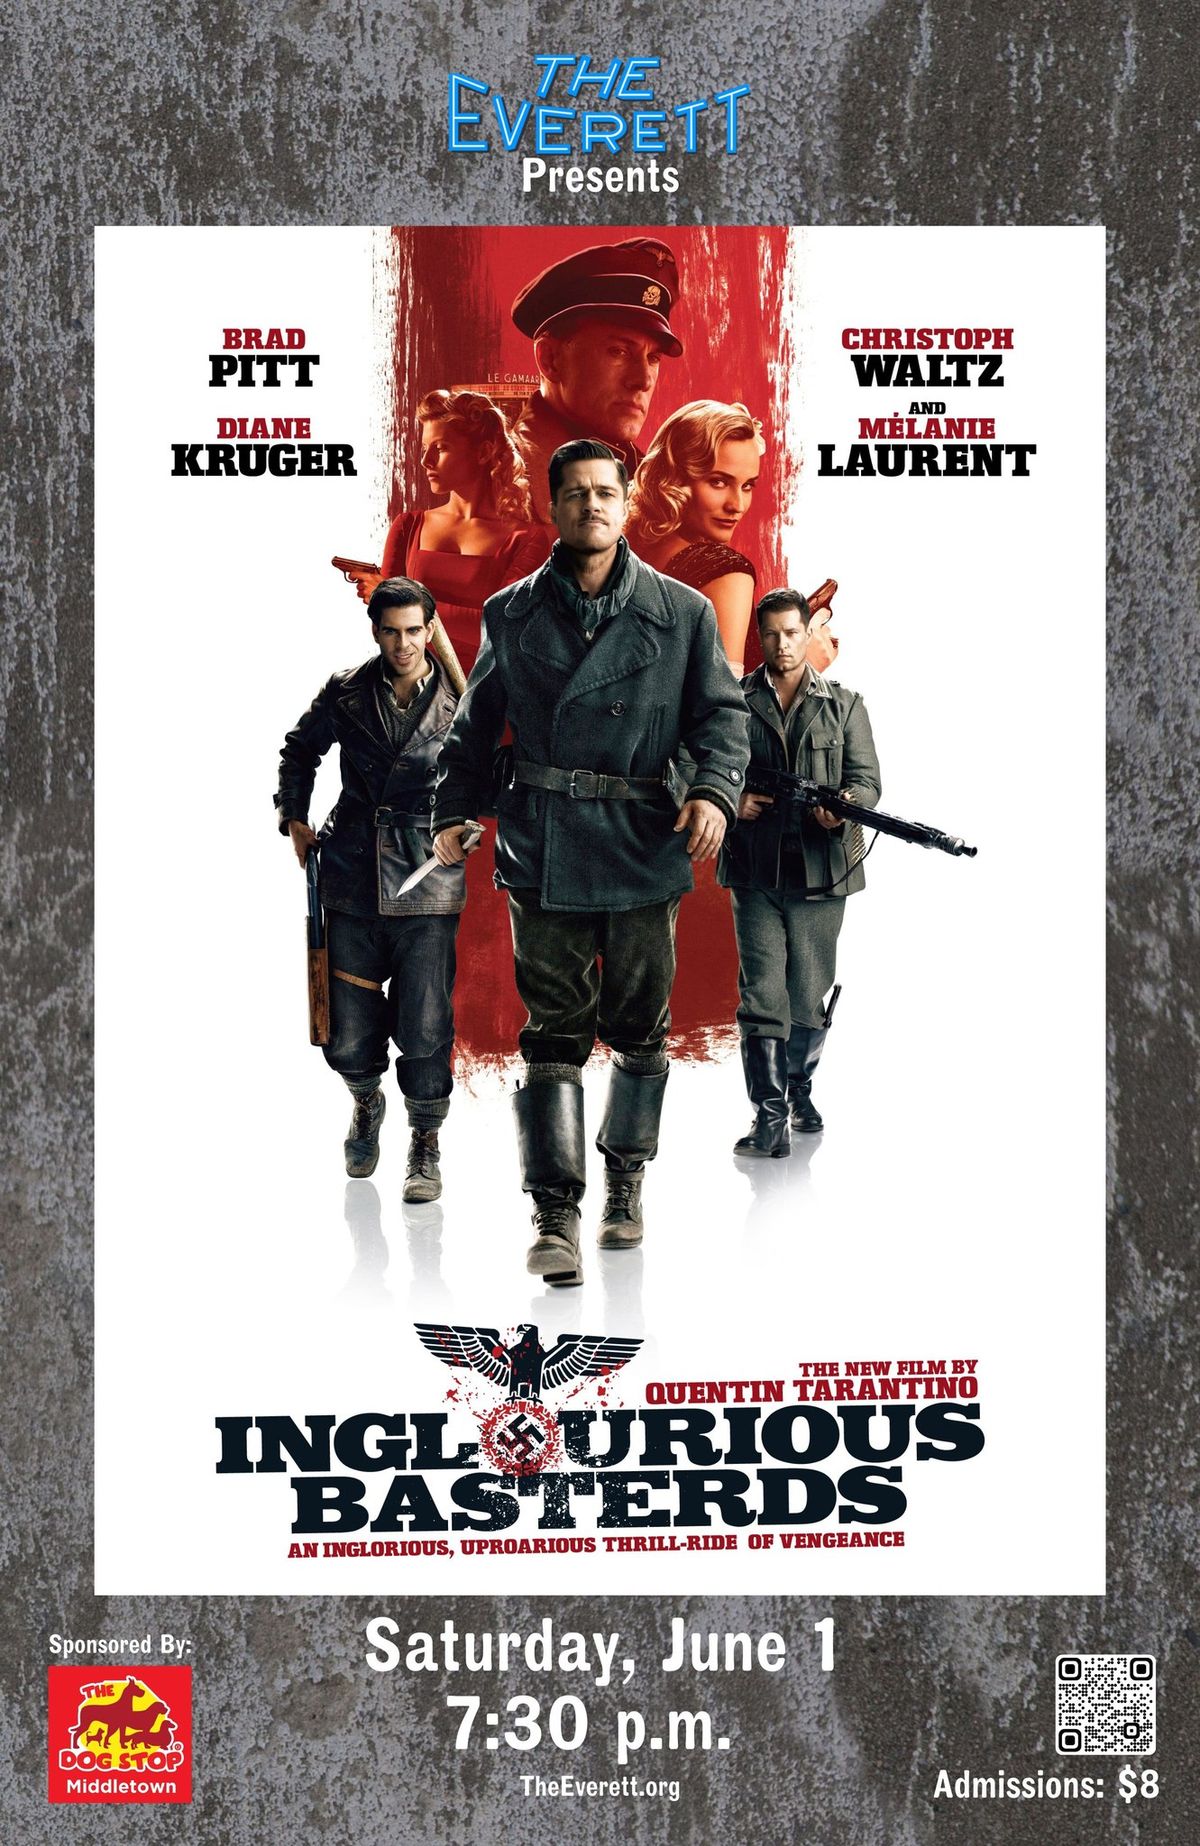 FILM: "Inglourious Basterds"